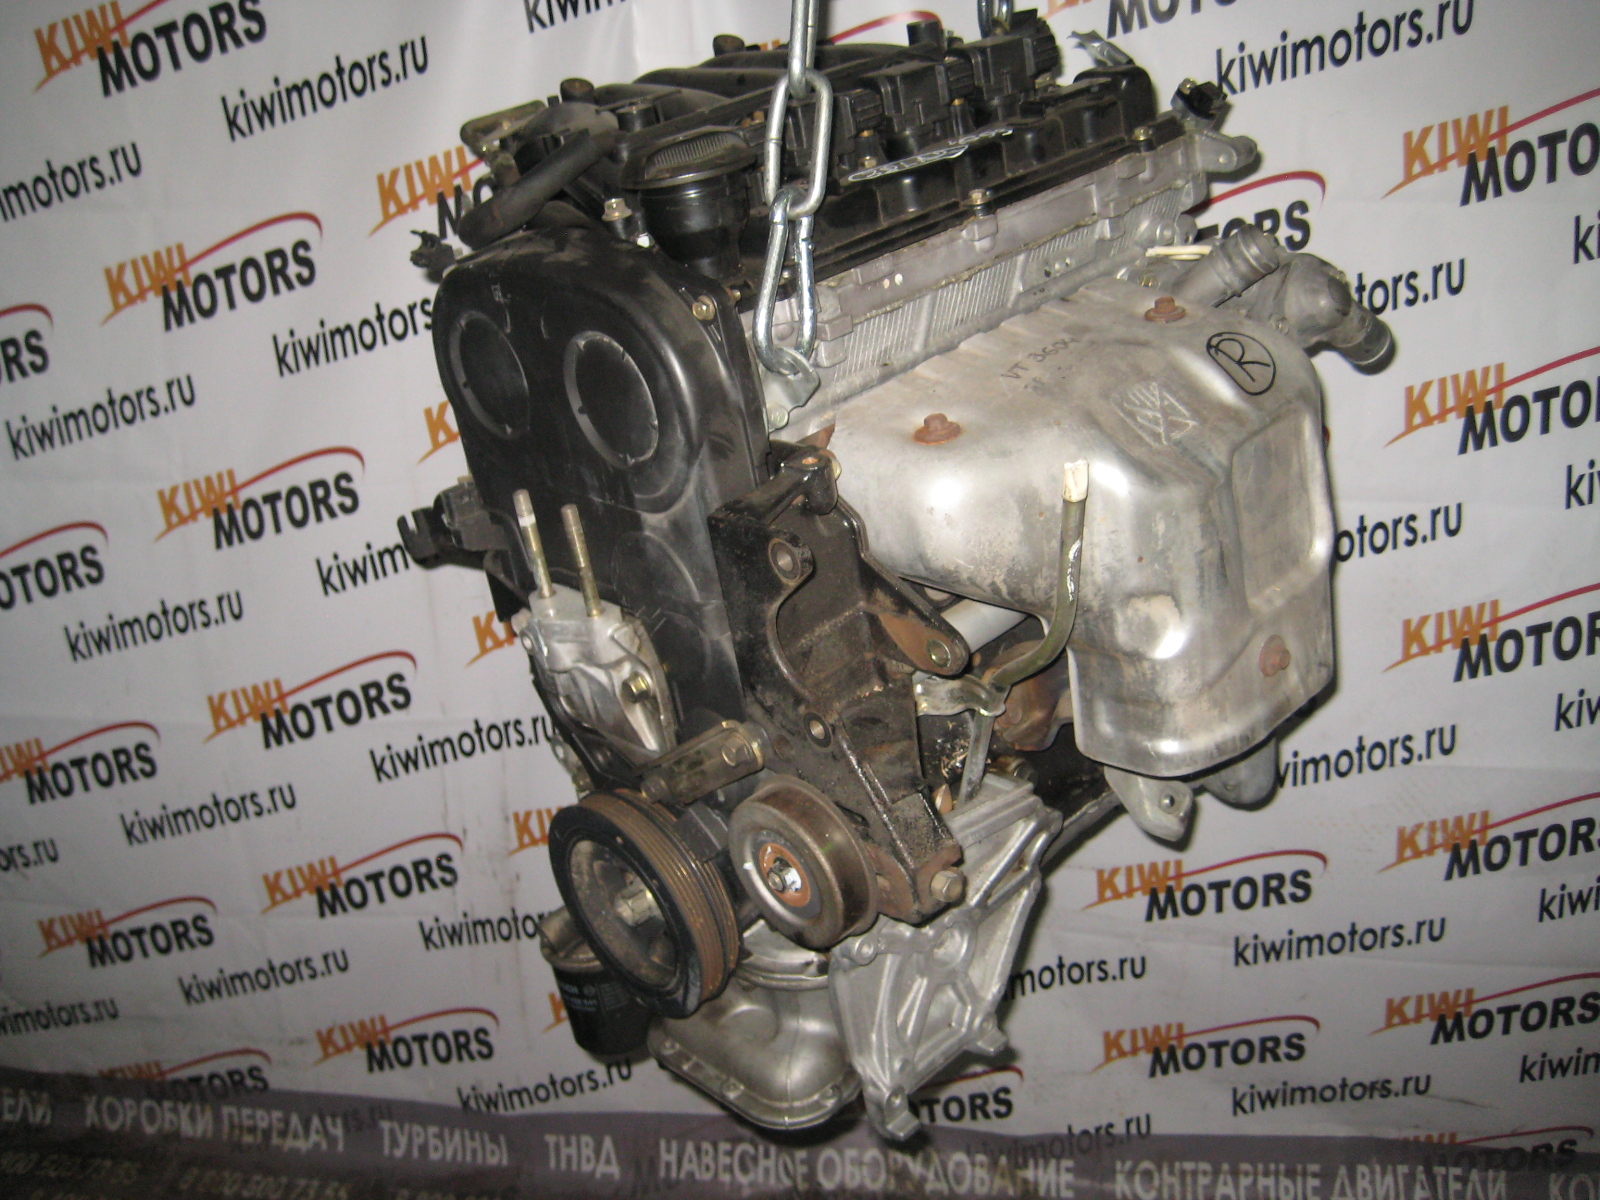 Двигатель j25a honda характеристики, ремонтопригодность